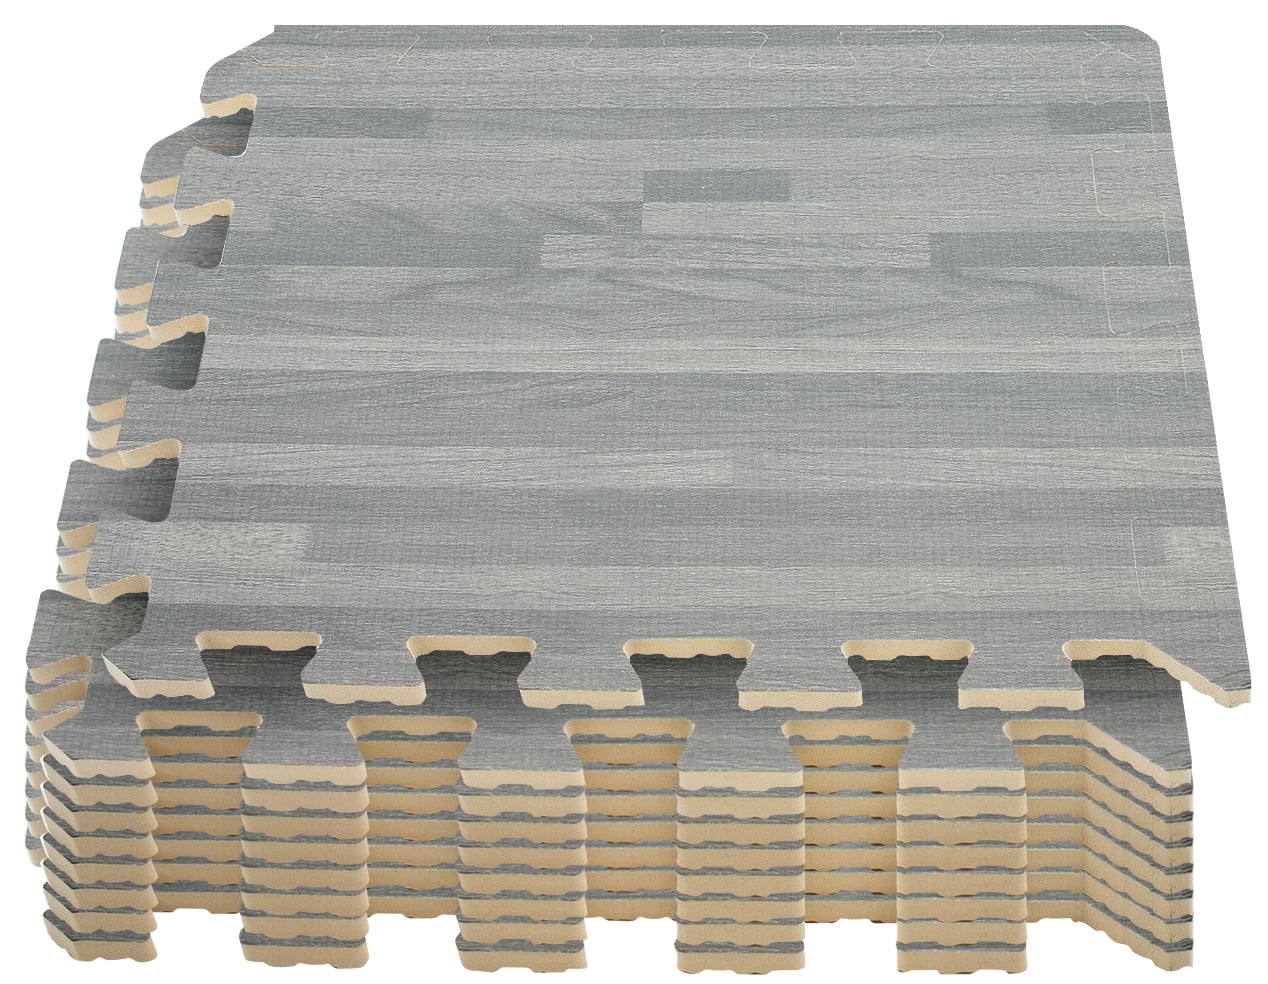 Interlocking Foam Floor Tiles for Basement or Outdoor Party Wood Grain Flooring 